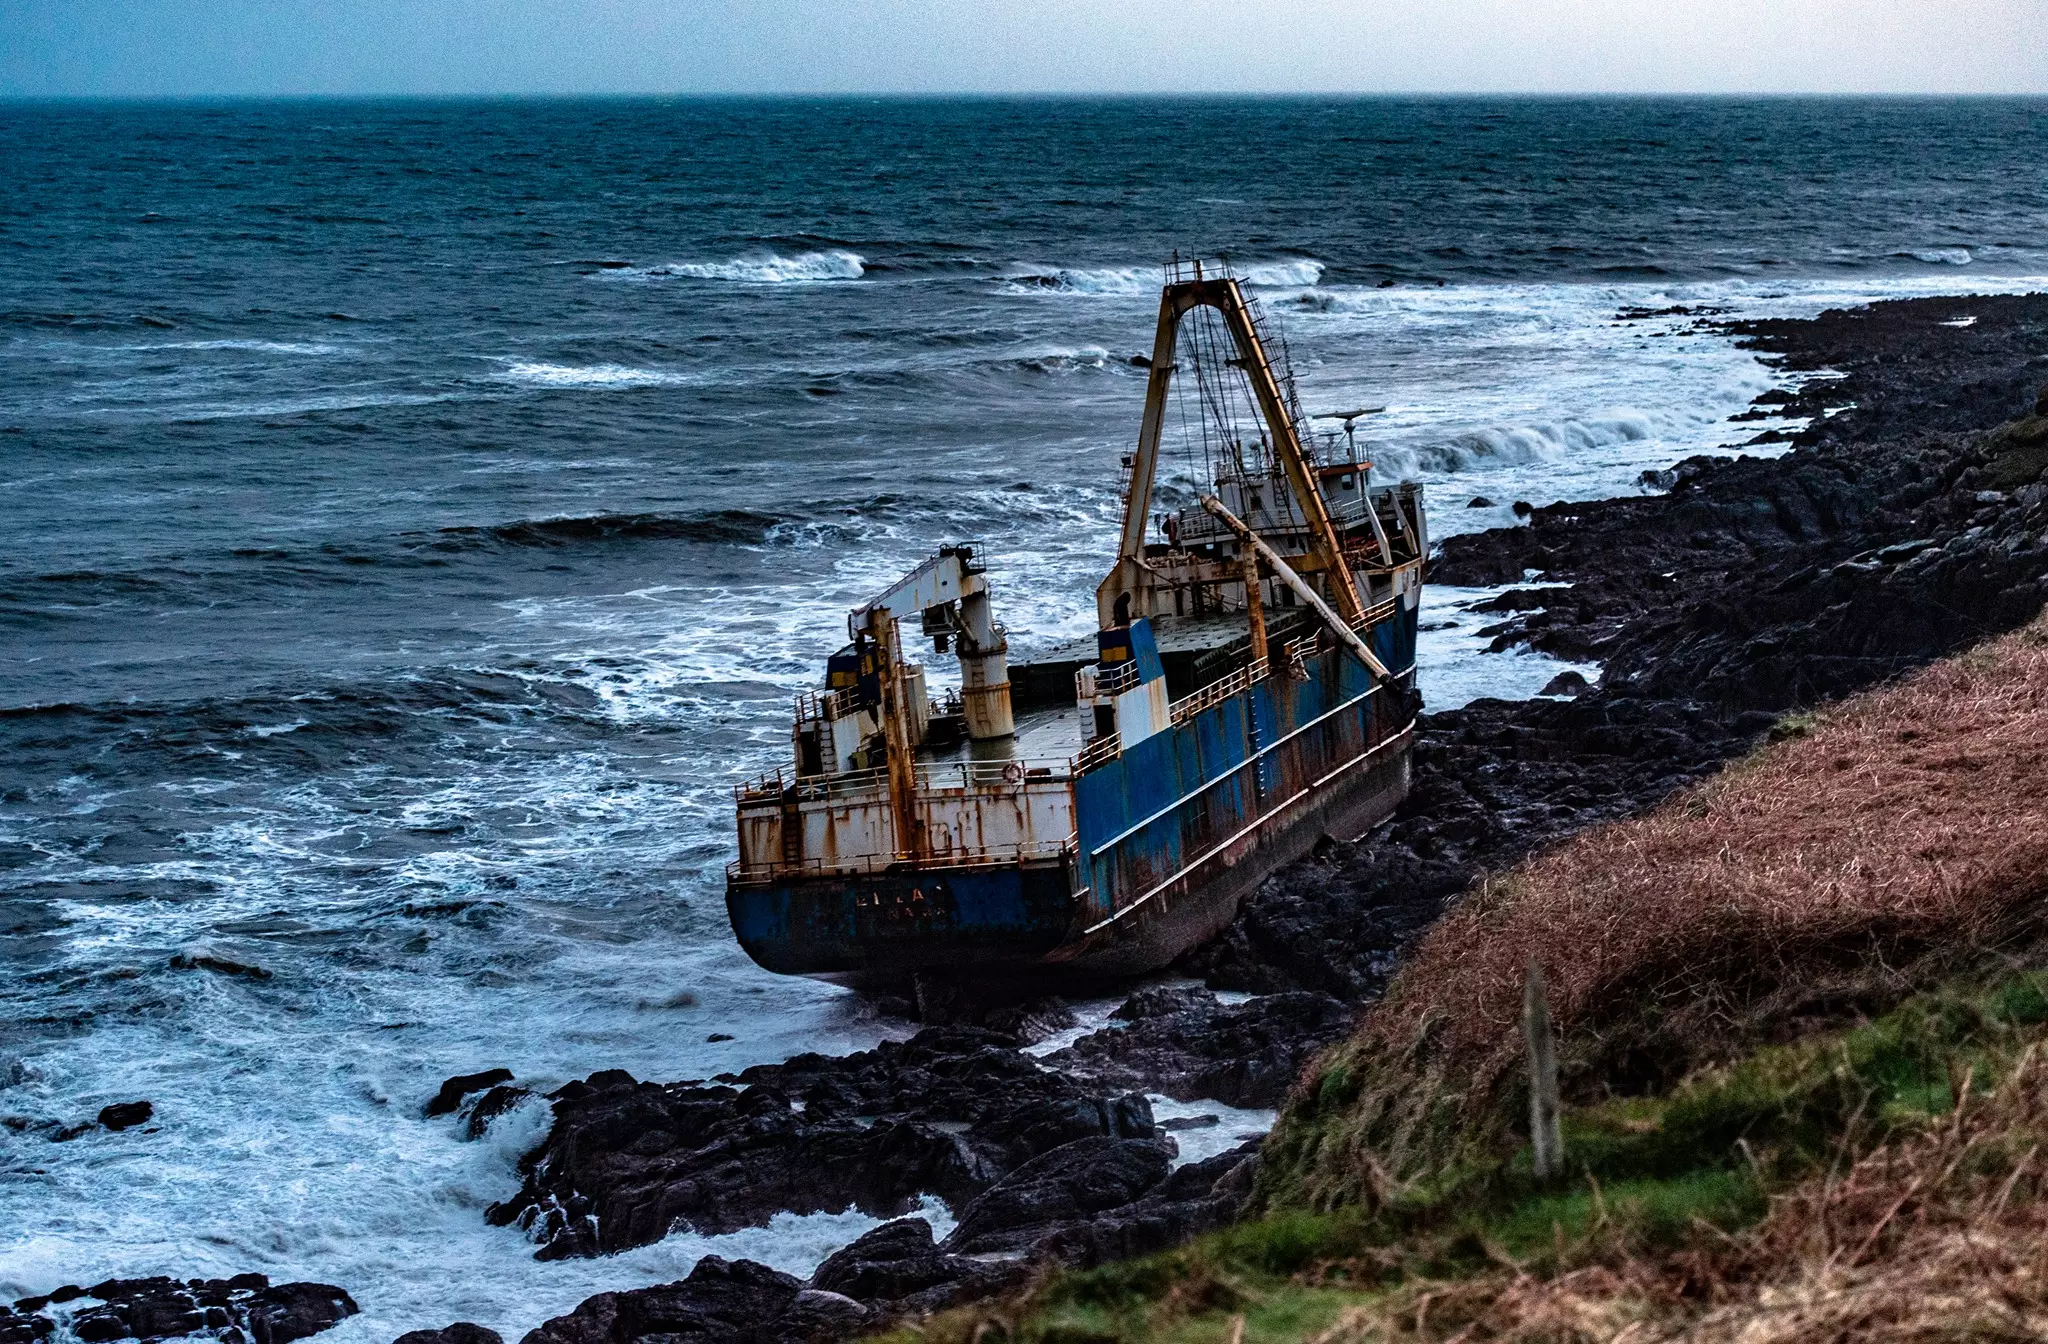 The abandoned ship washed up on the Irish coast on Sunday morning (February 16).